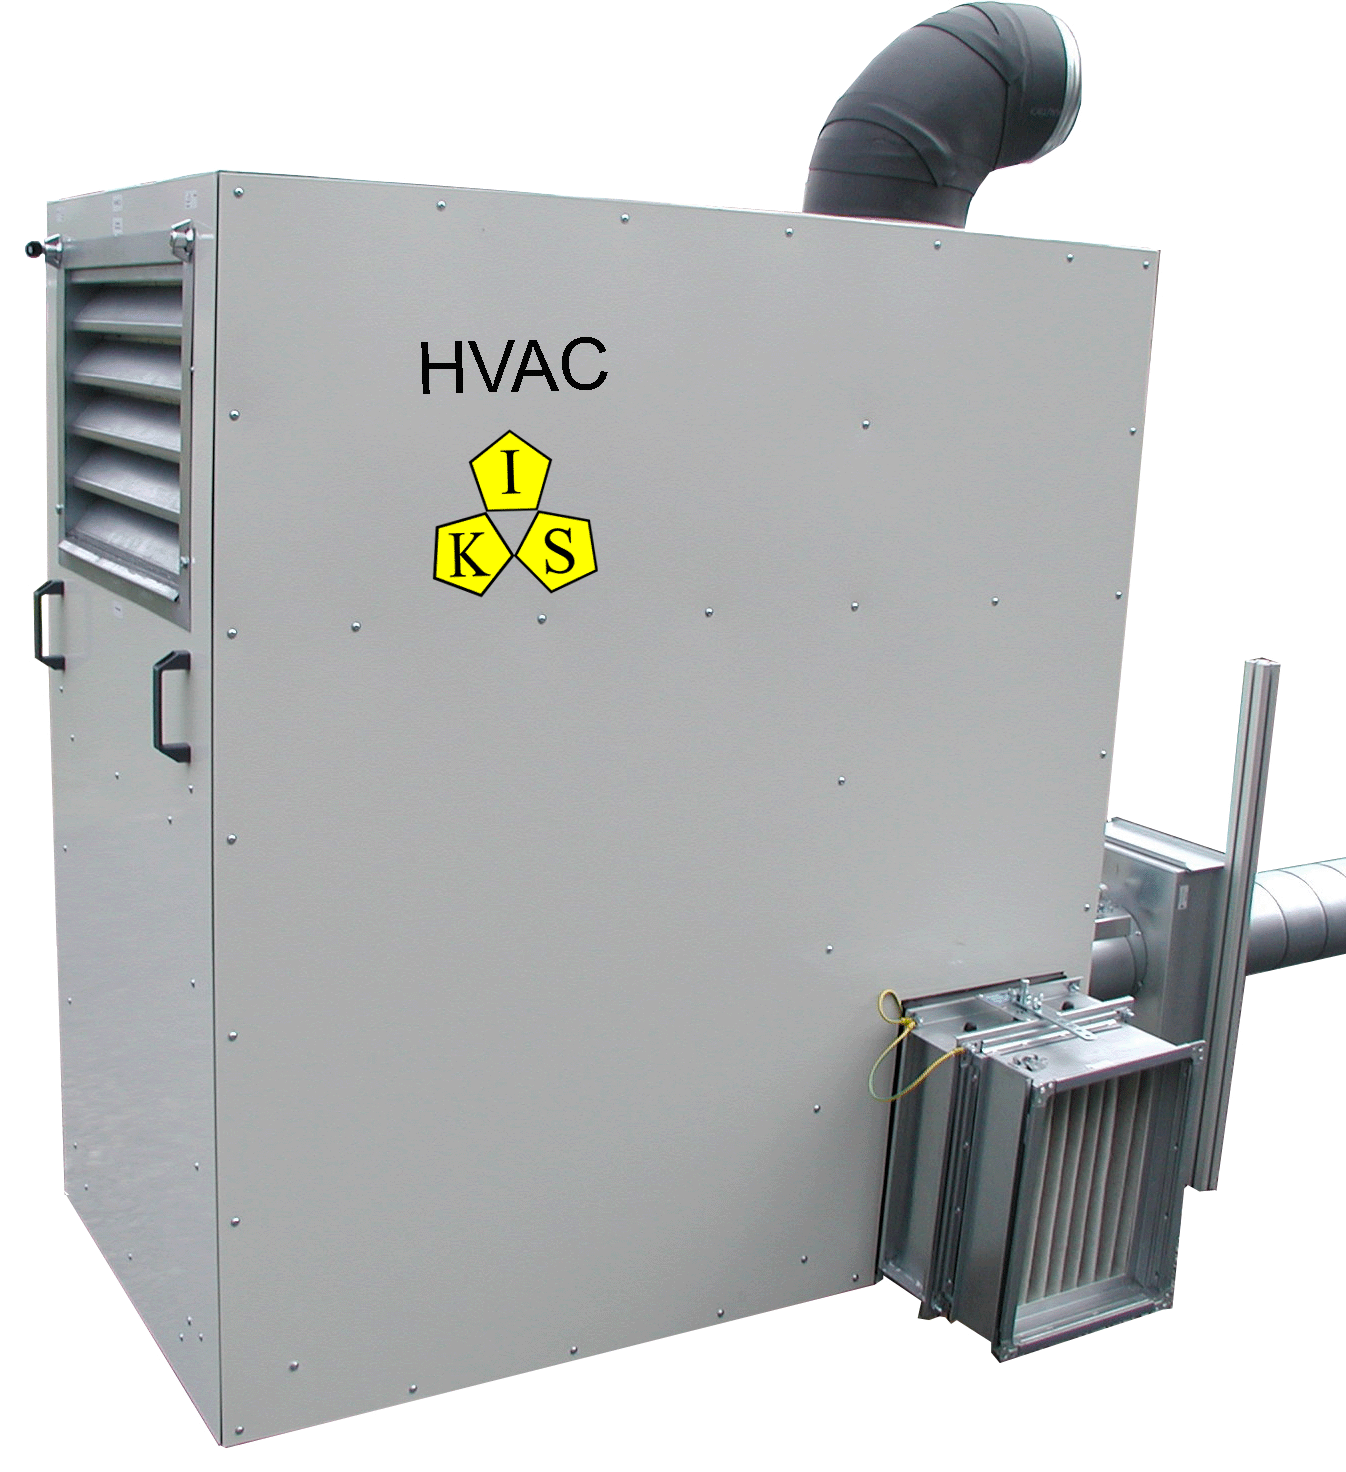 HVAC_001-2